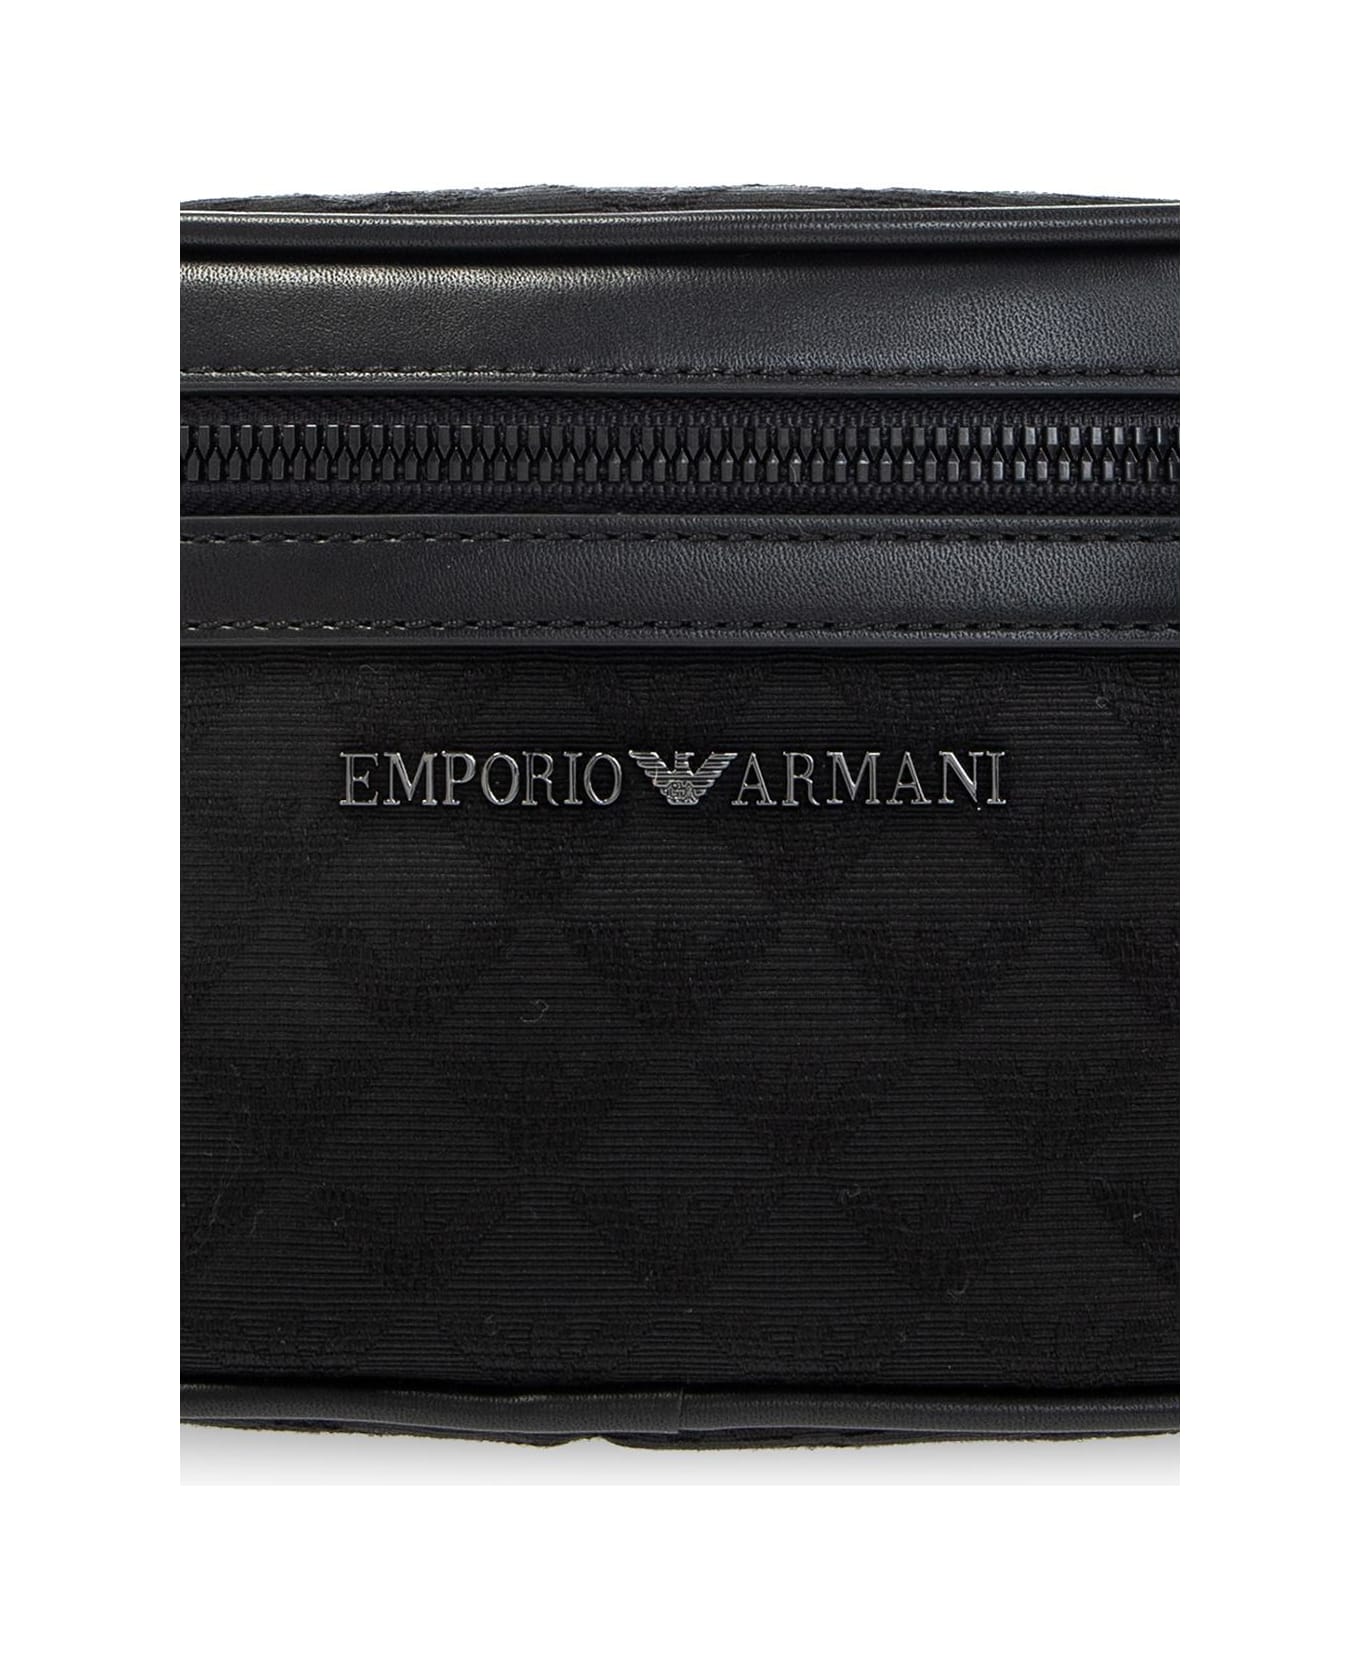 Emporio Armani Belt Bag With Logo - Black/Black/Black ベルトバッグ